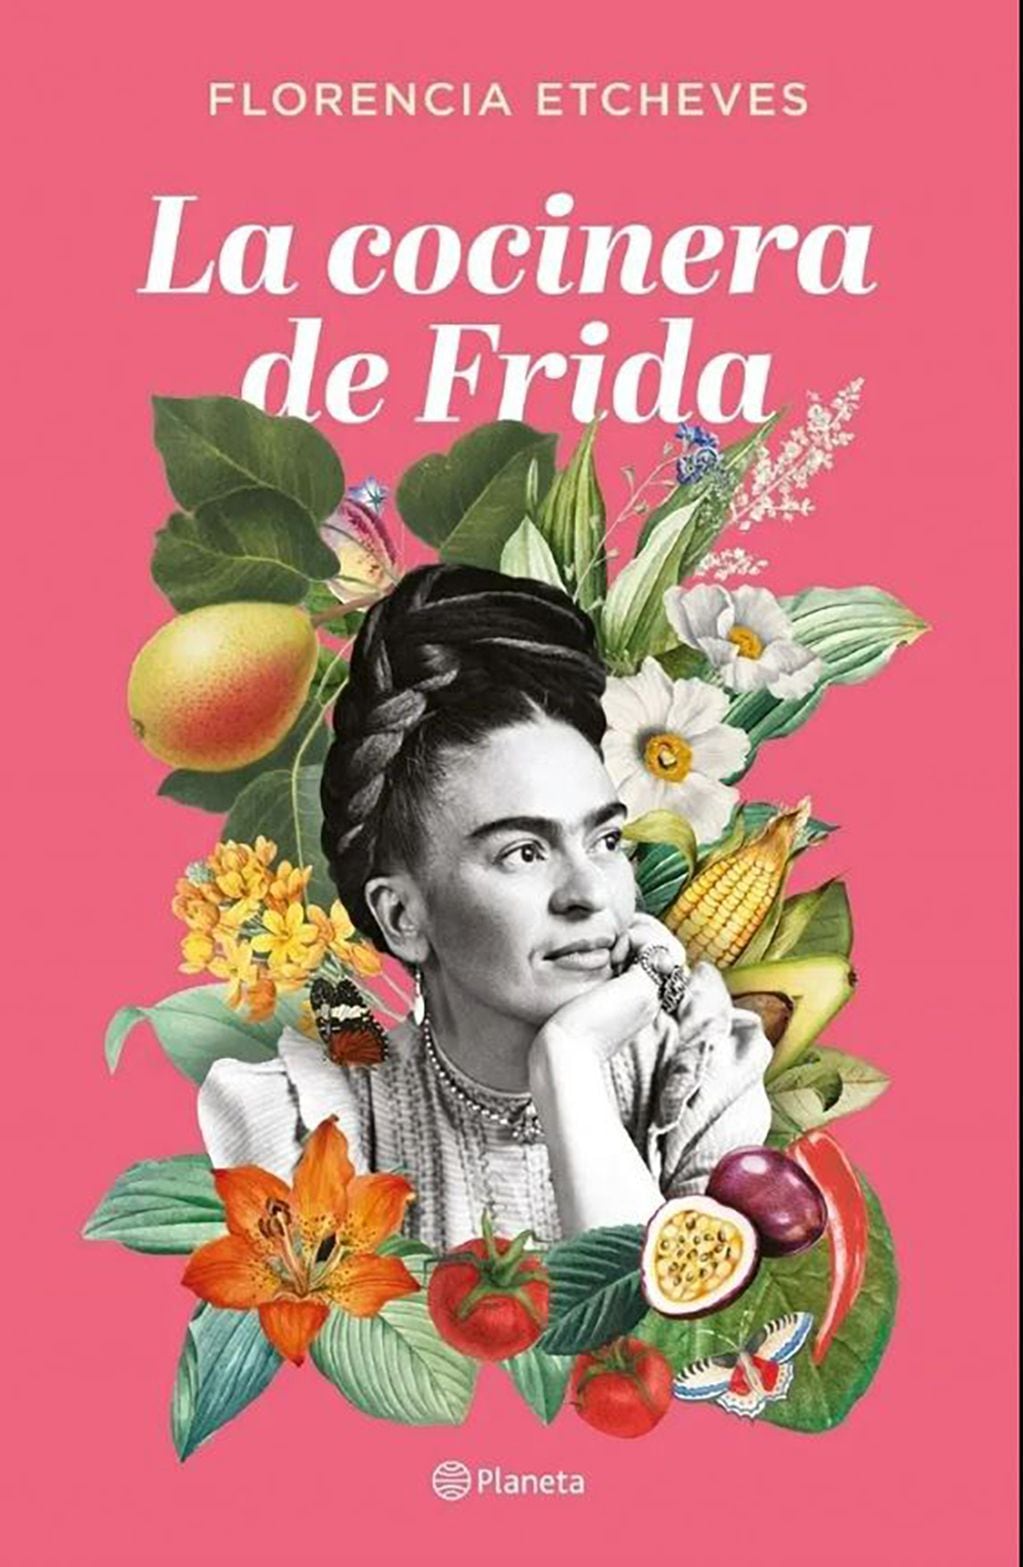 En esta nueva ficción de Florencia Etcheves, Nayeli, una joven tehuana que huyó de su hogar, llega a la ciudad de México y encuentra un lugar como cocinera en la Casa Azul, donde vive Frida Kahlo.